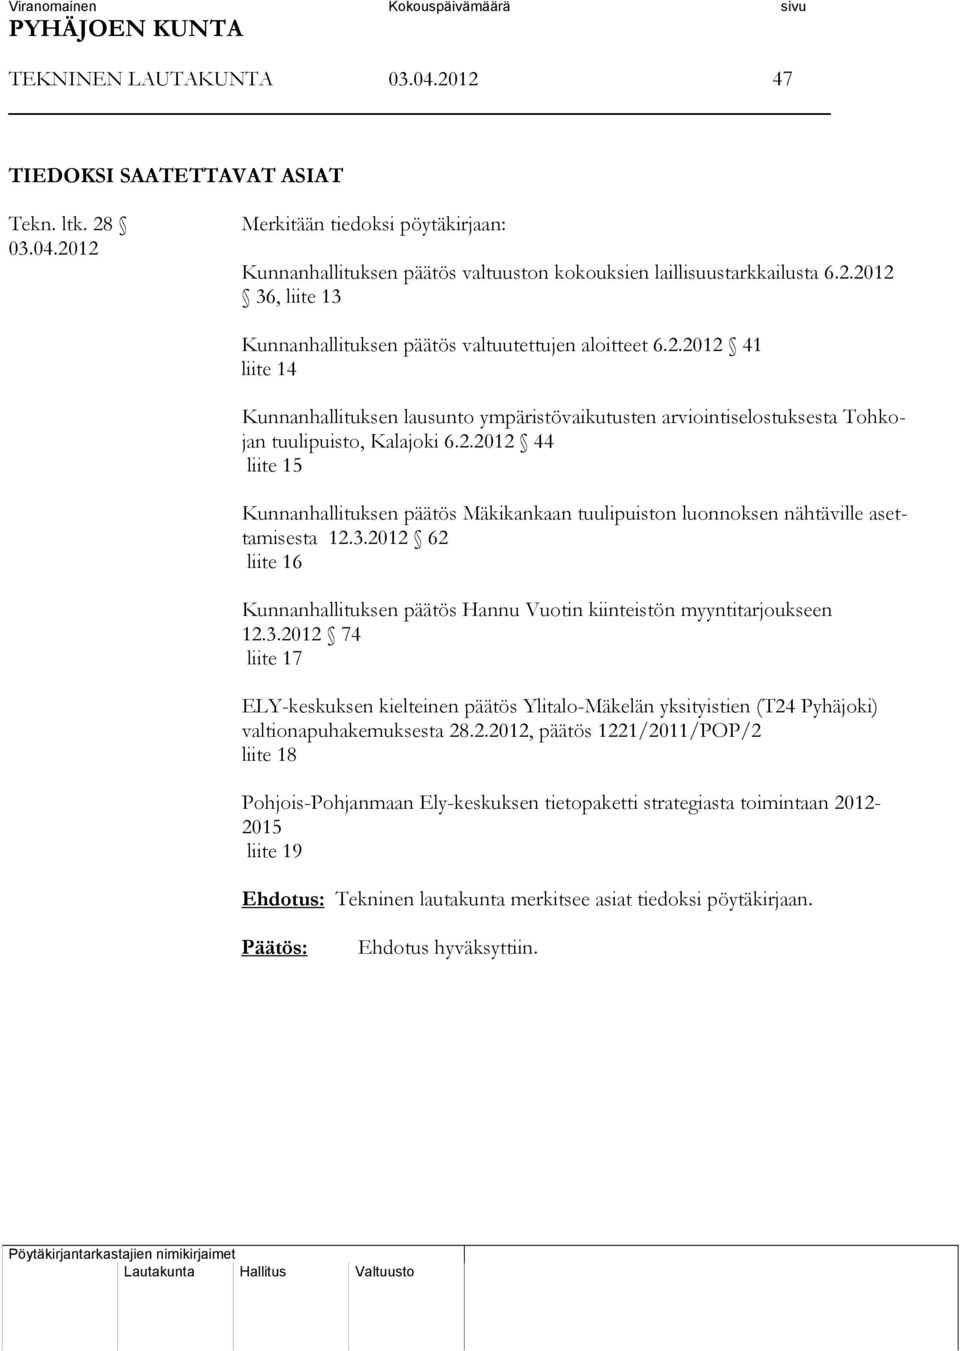 3.2012 62 liite 16 Kunnanhallituksen päätös Hannu Vuotin kiinteistön myyntitarjoukseen 12.3.2012 74 liite 17 ELY-keskuksen kielteinen päätös Ylitalo-Mäkelän yksityistien (T24 Pyhäjoki) valtionapuhakemuksesta 28.